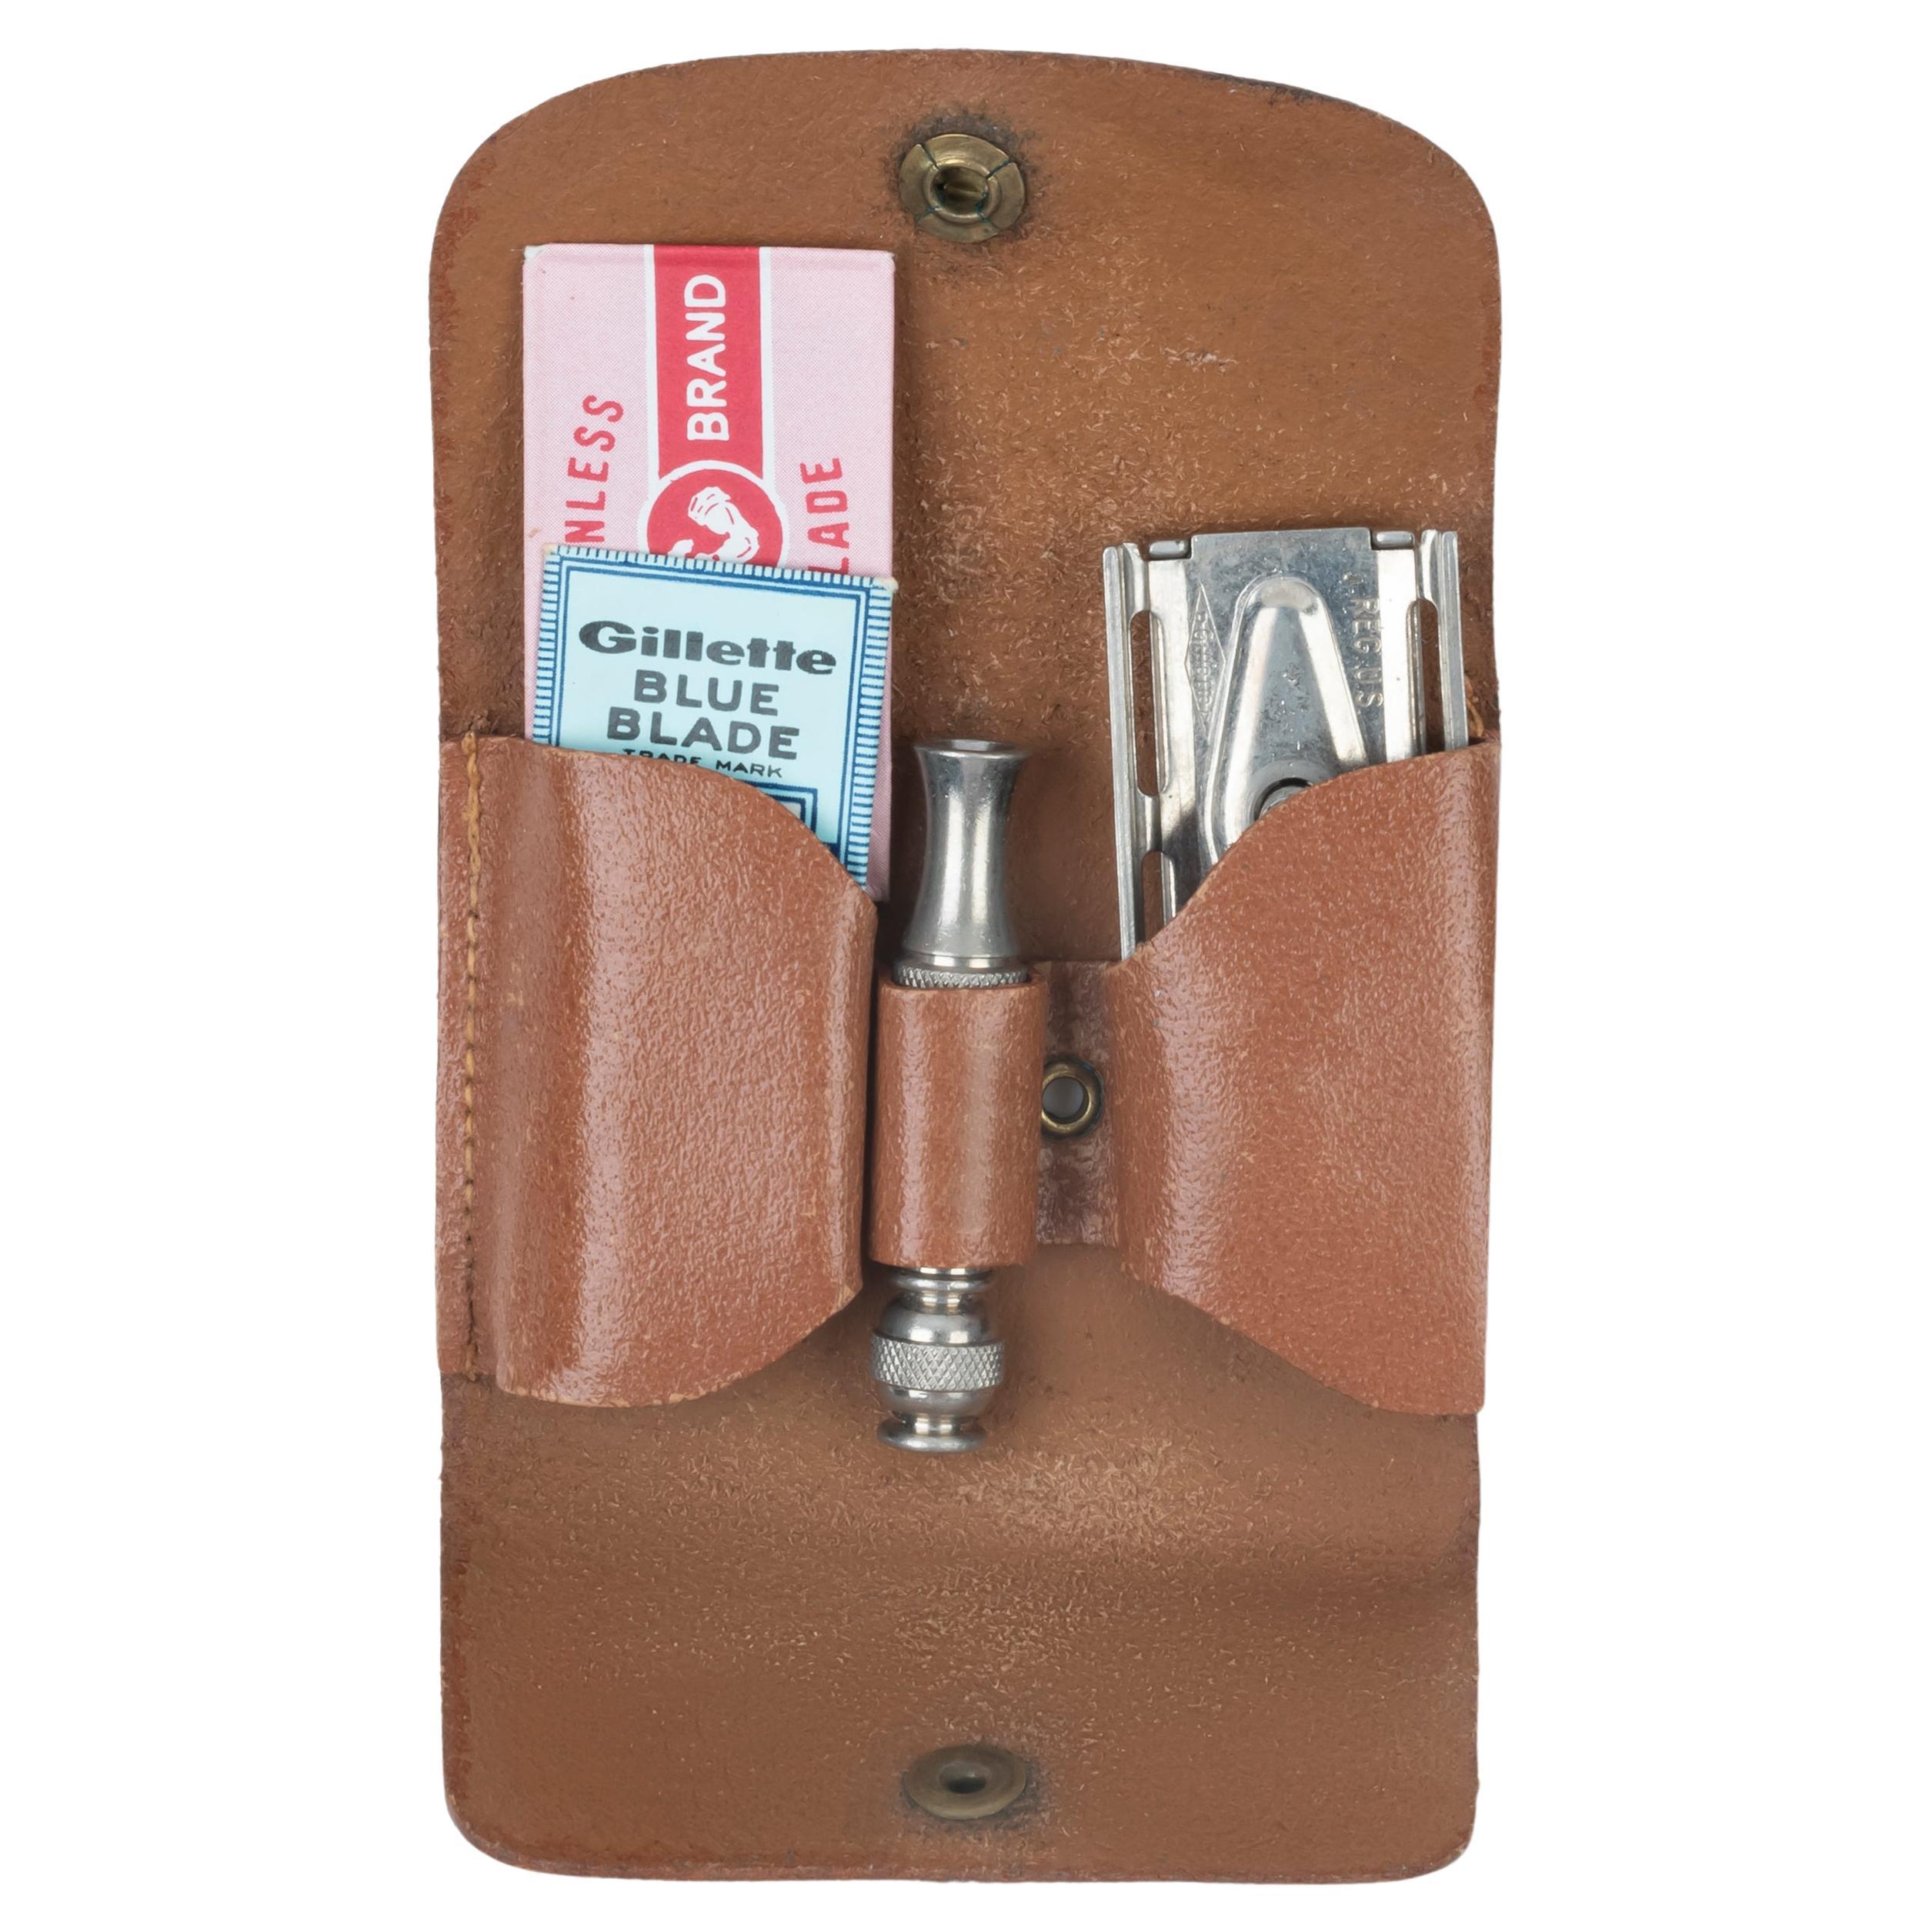 Ensemble de rasoirs de voyage Gillette Vintage 1964 Tech De Safety dans un coffret en cuir